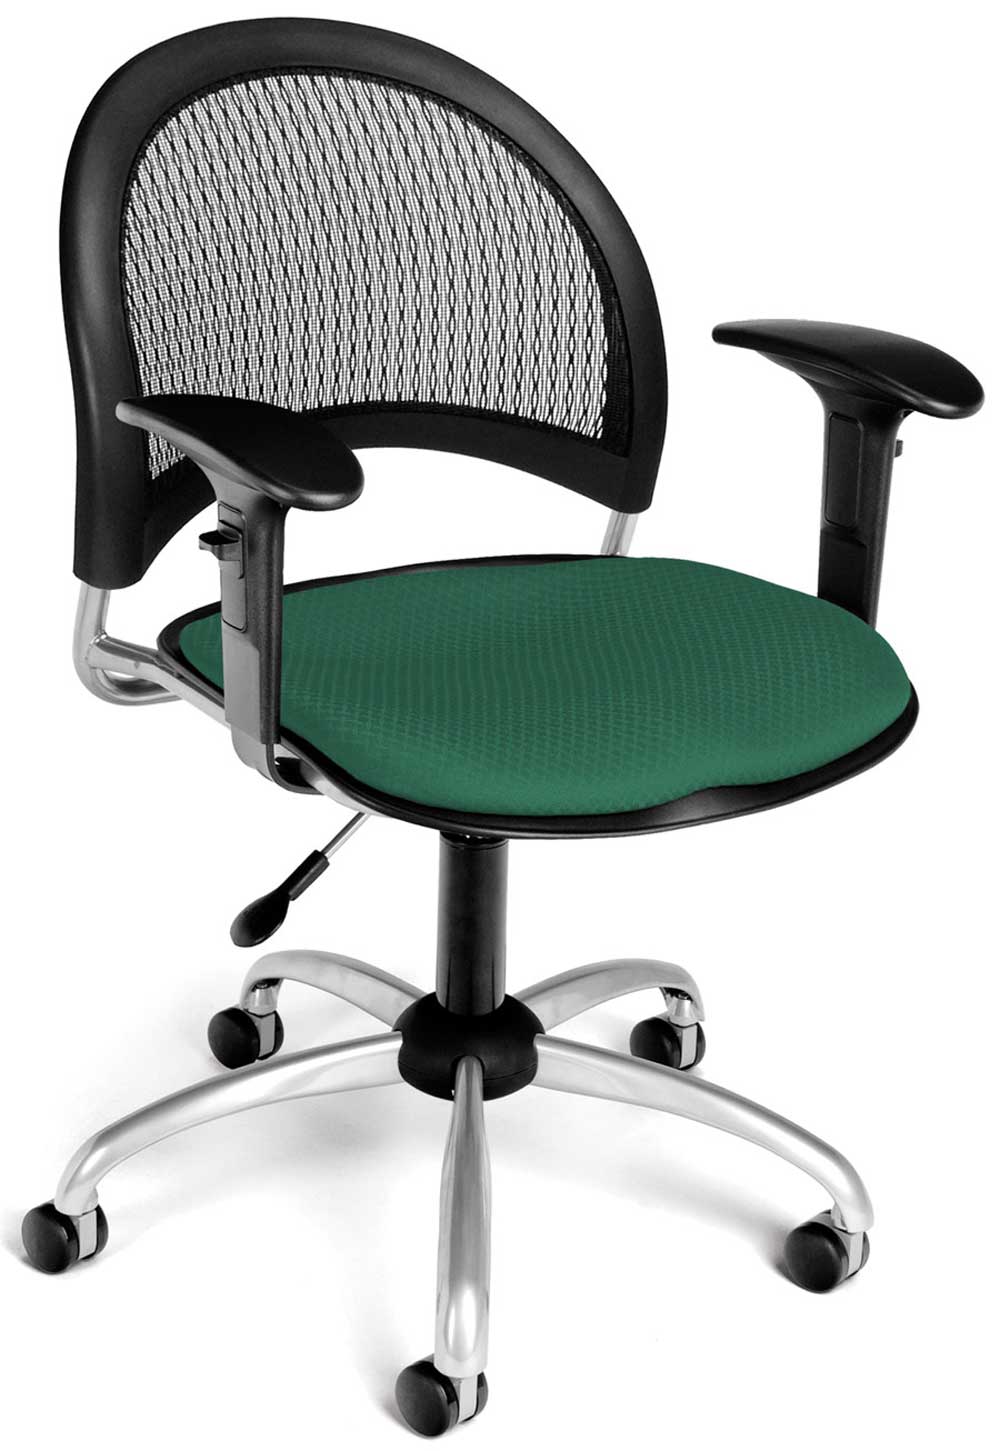 Chair Cushion Ergonomic | Chair Pads & Cushions